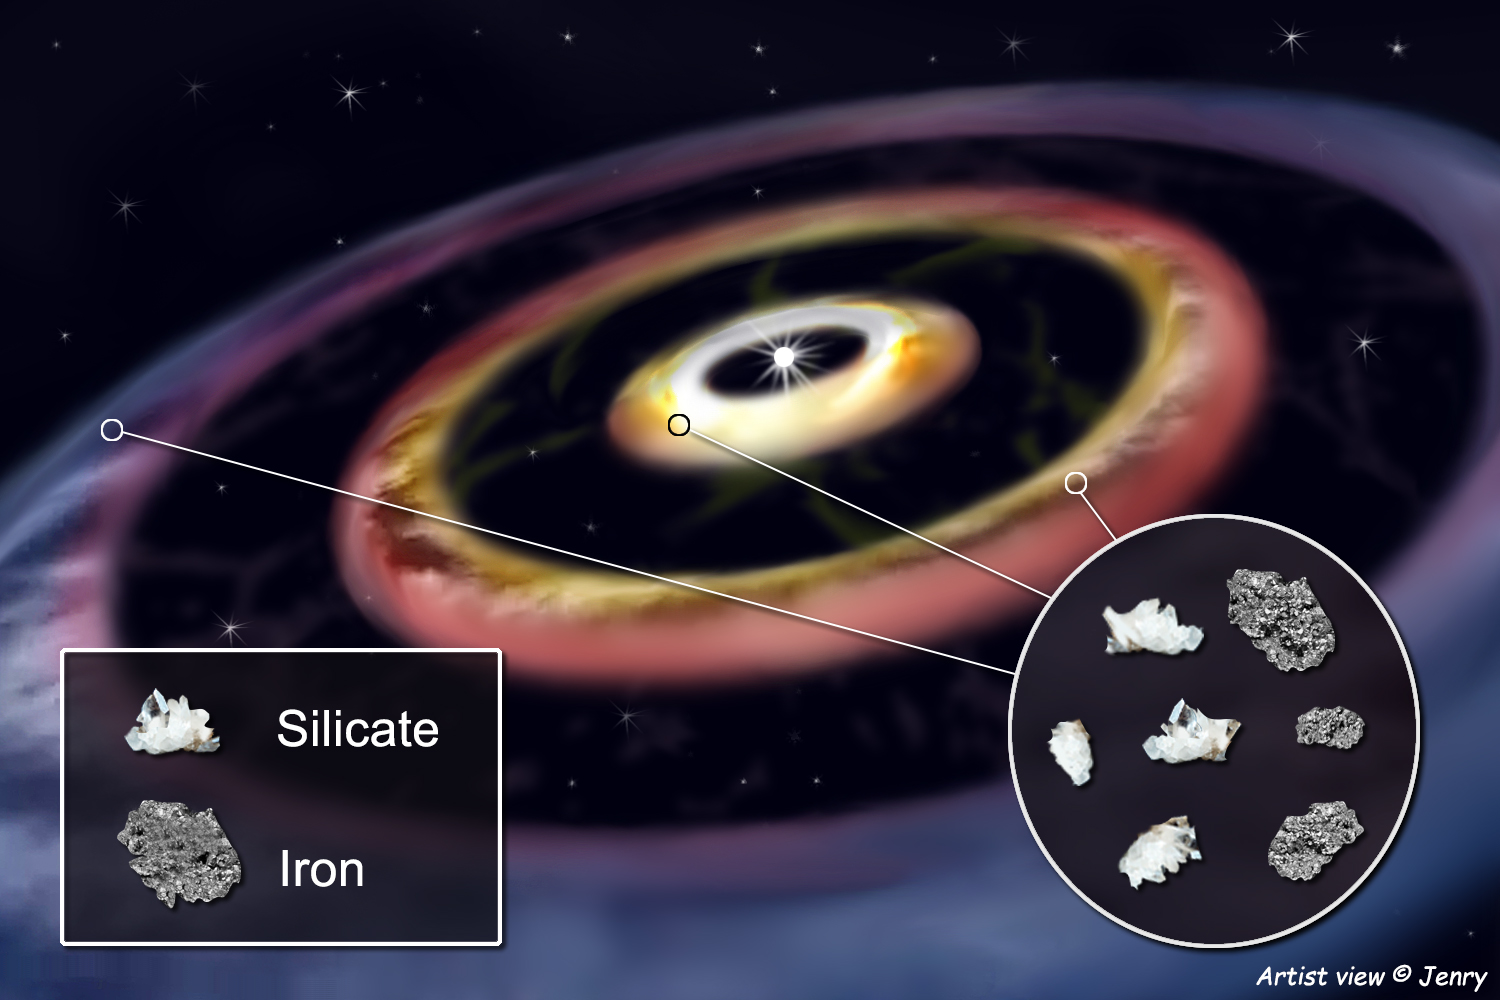 Magyar csillagászok magnéziumot, szilíciumot, oxigént és vasat is felfedeztek egy fiatal csillag környezetében